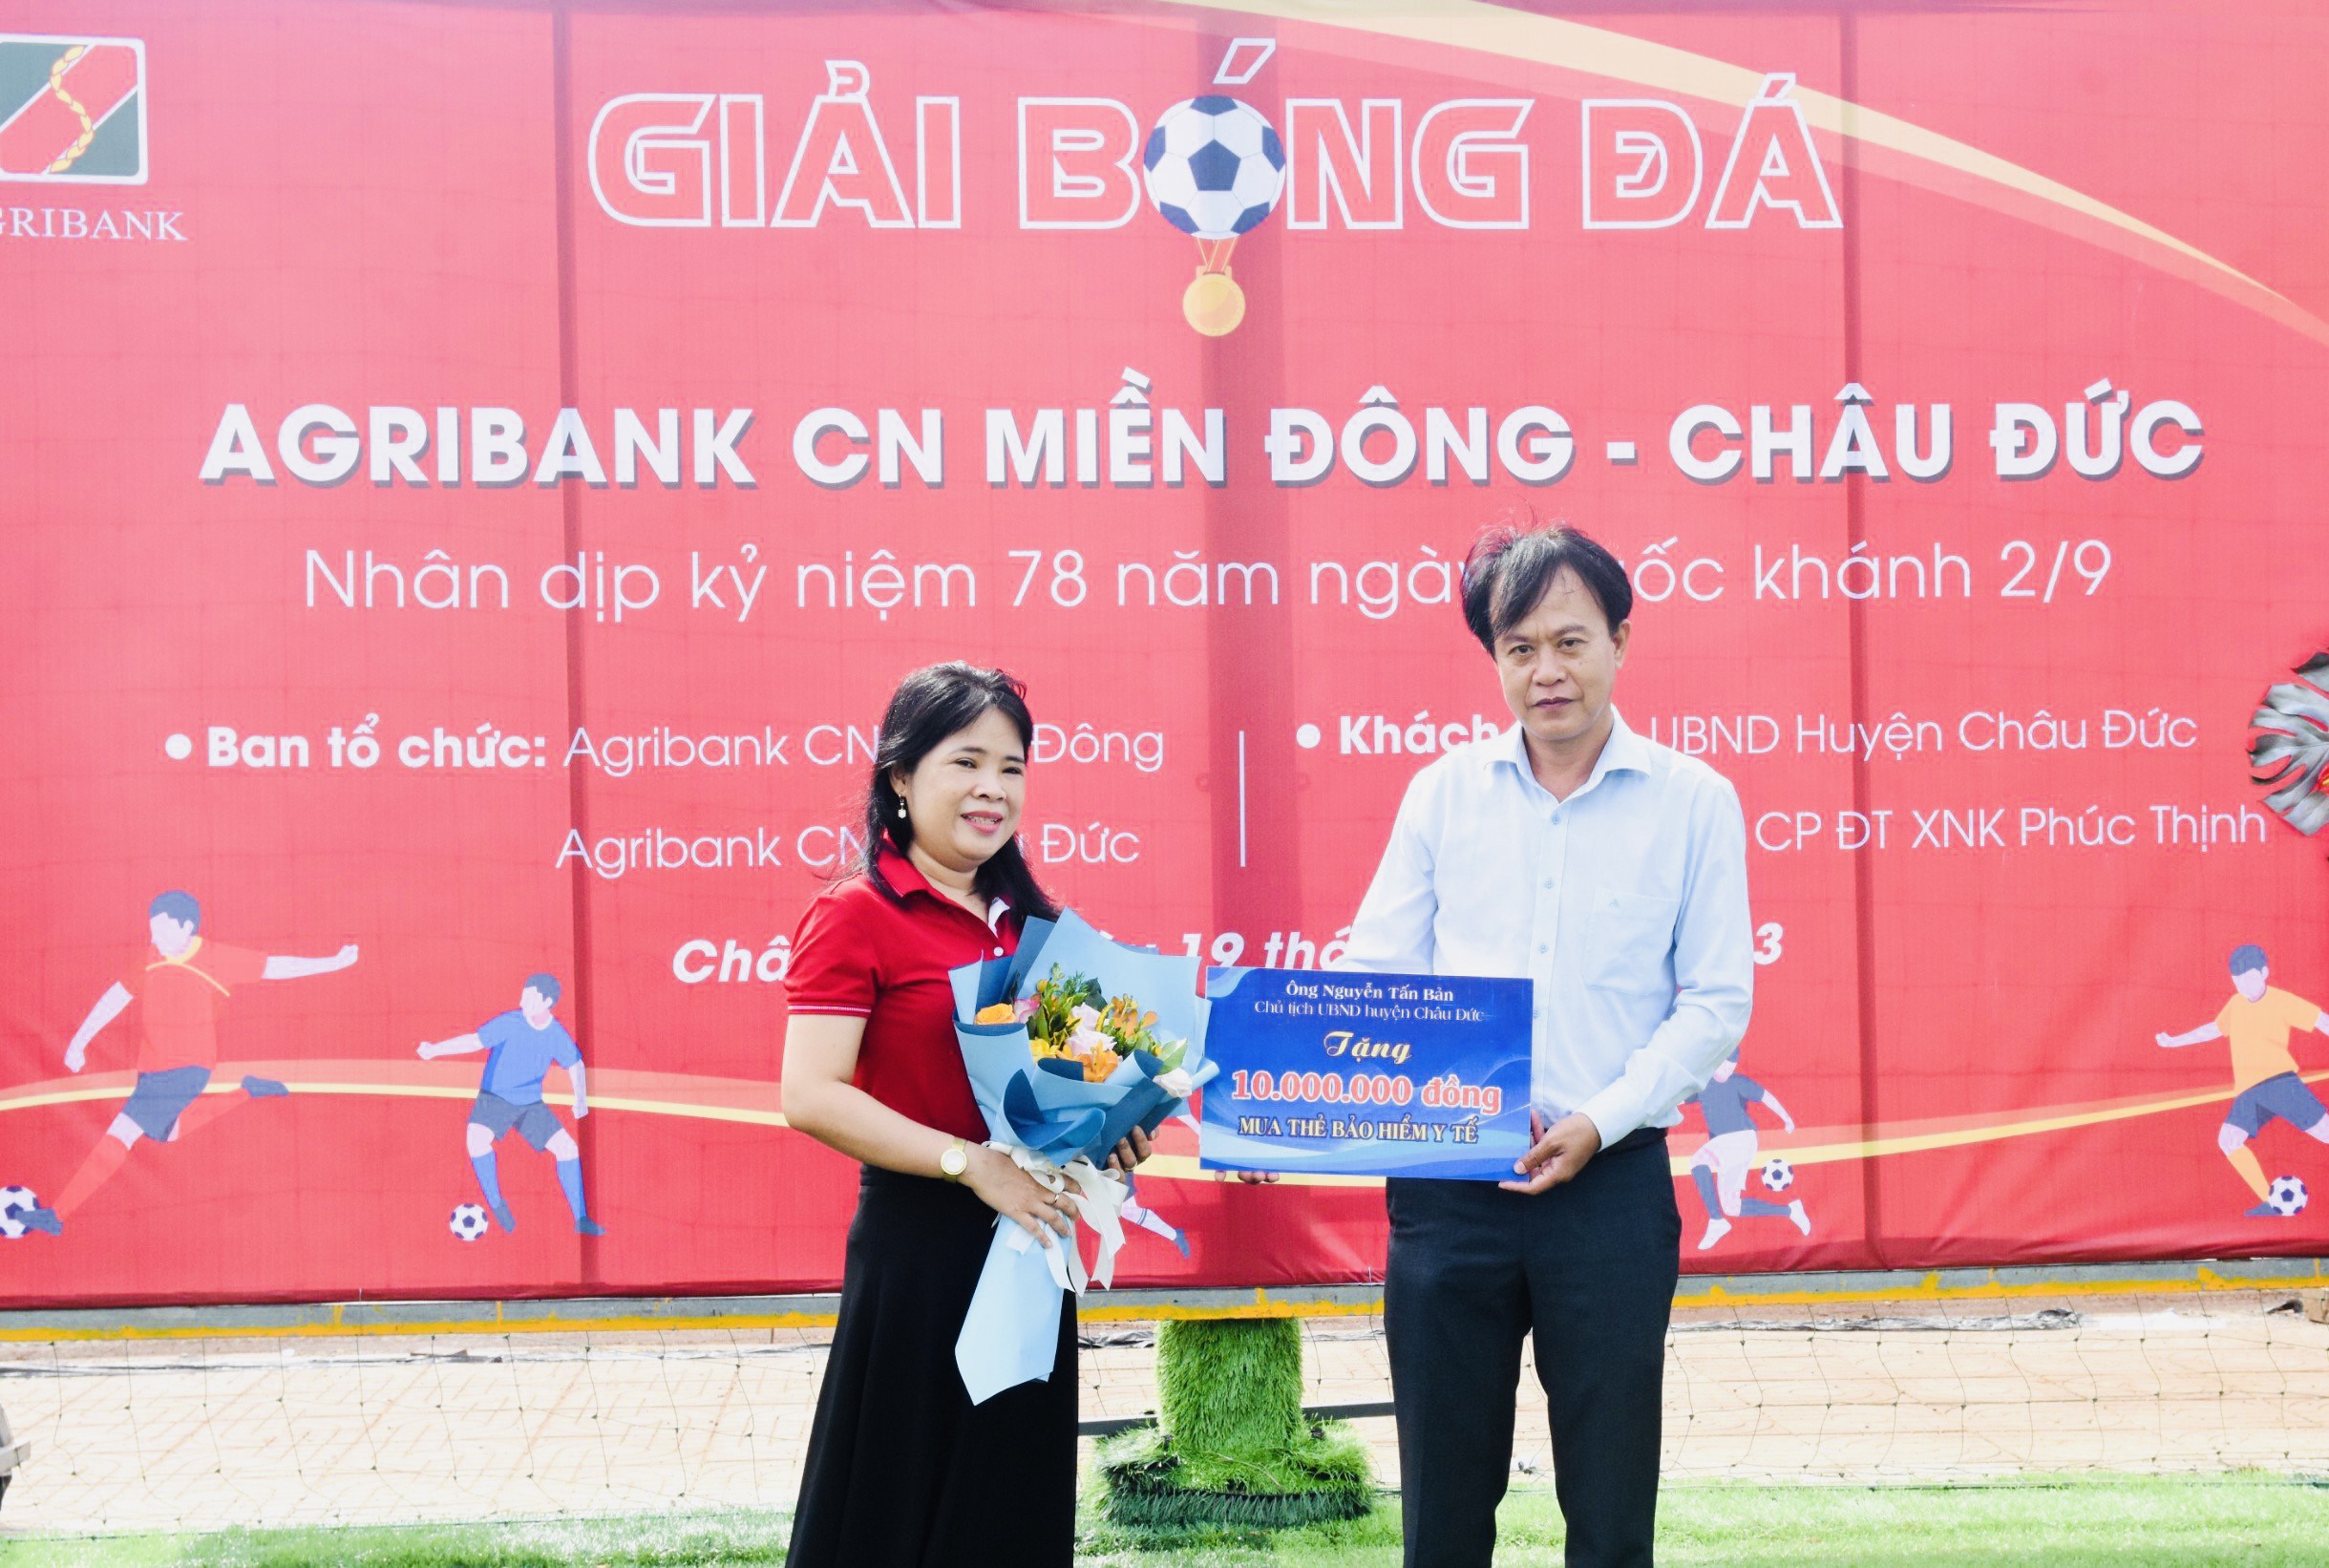 Đại diện của ông Nguyễn Tấn Bản, Chủ tịch UBND huyện Châu Đức trao bảng tượng trưng số tiền 10 triệu đồng mua thẻ bảo hiện cho người nghèo xã Cù Bị, huyện Châu Đức.